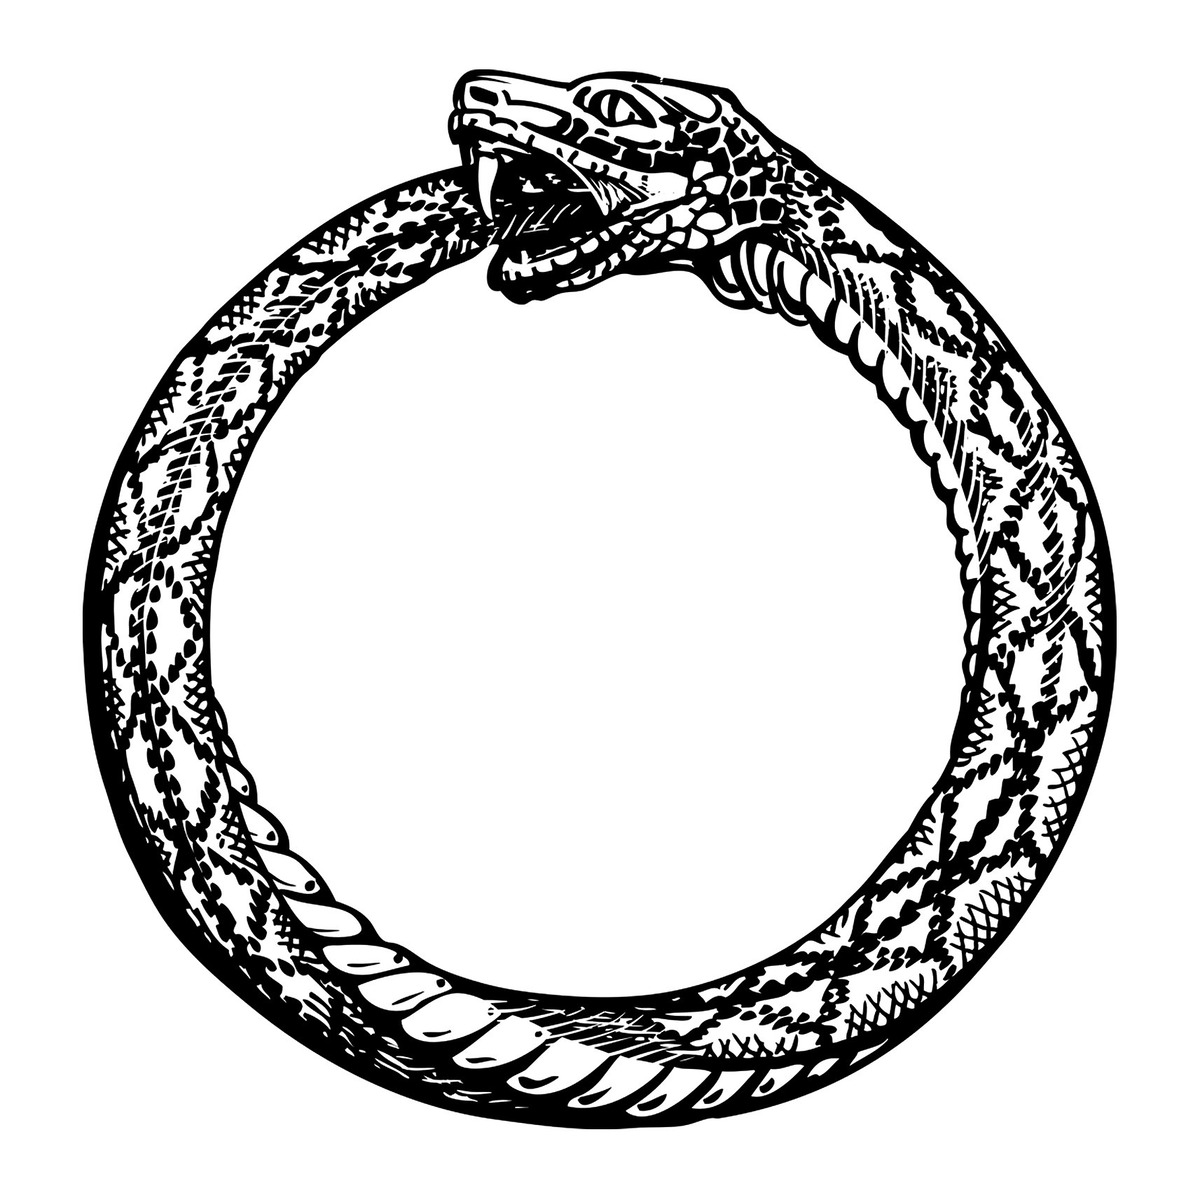 Змея значение символа. Змей ёрмунганд Уроборос. Уроборос змея бесконечность. Уроборос Феодор Пелеканос. Змей бесконечности Уроборос.